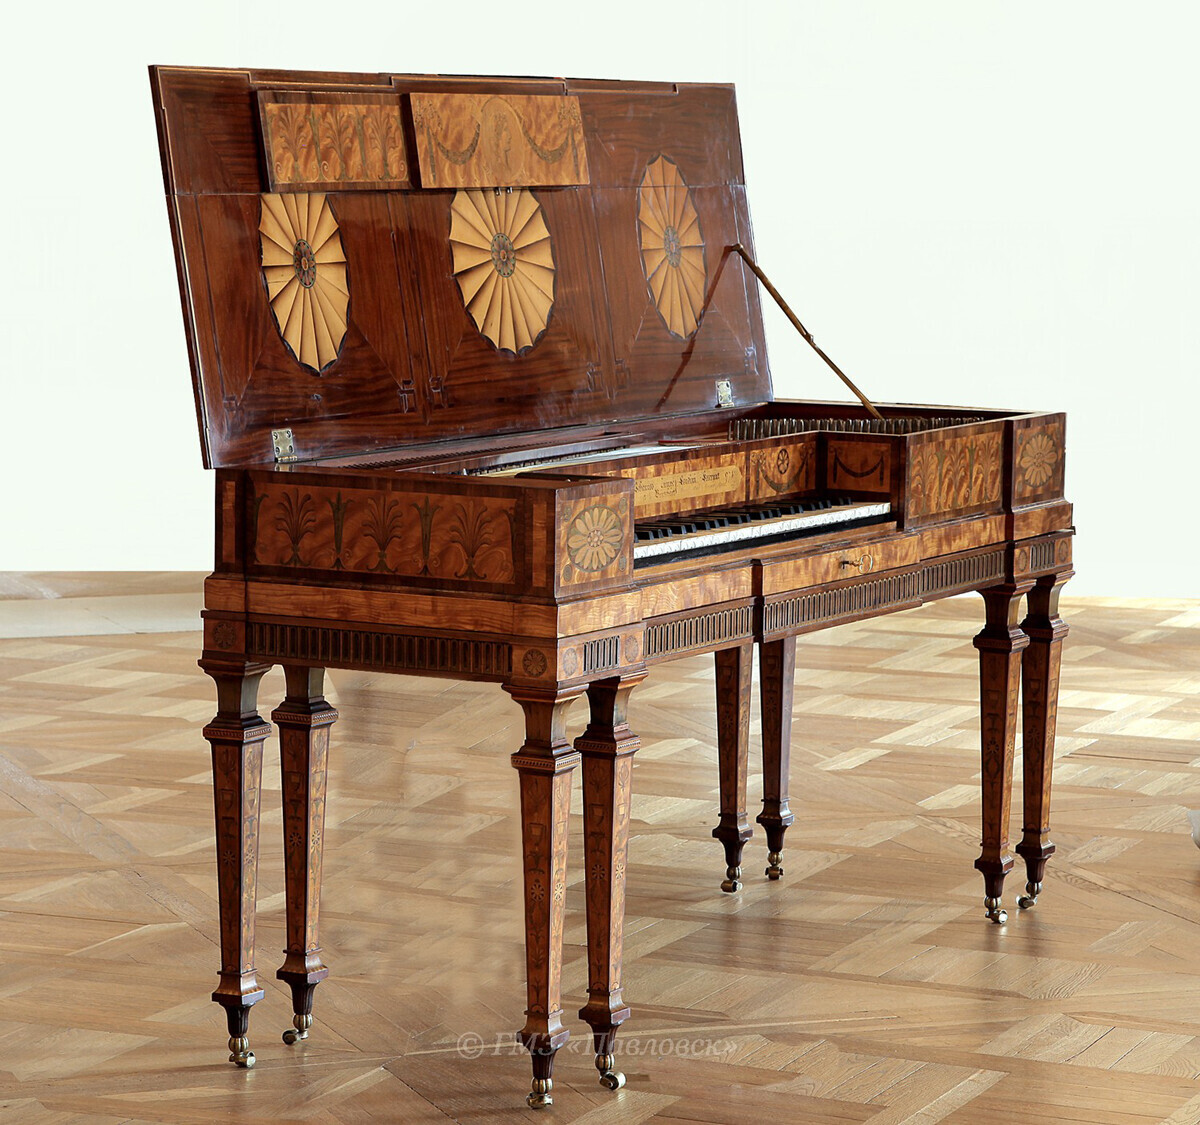 Piano persegi yang dibuat oleh Johannes Zumpe (1726-1783), dimiliki oleh Janda Permaisuri Maria Fedorovna sejak 1817.